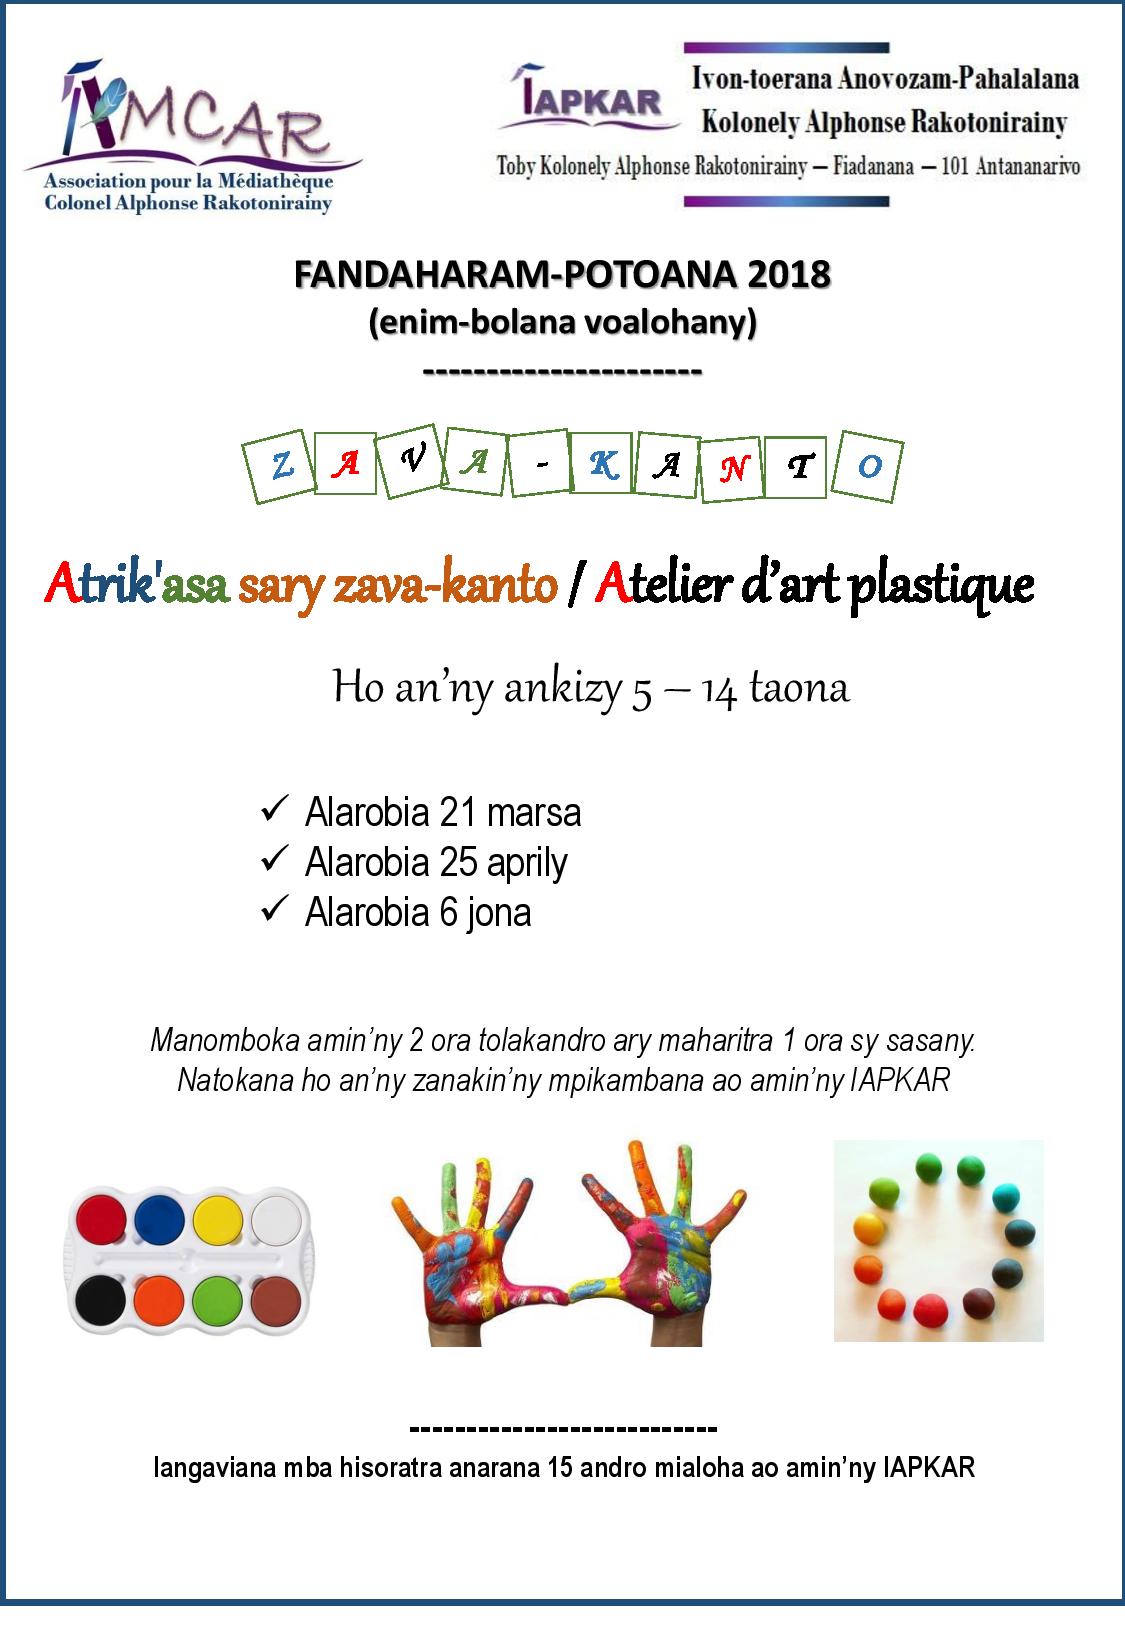 Affiche ateliers art plastique 2018 1 amcar